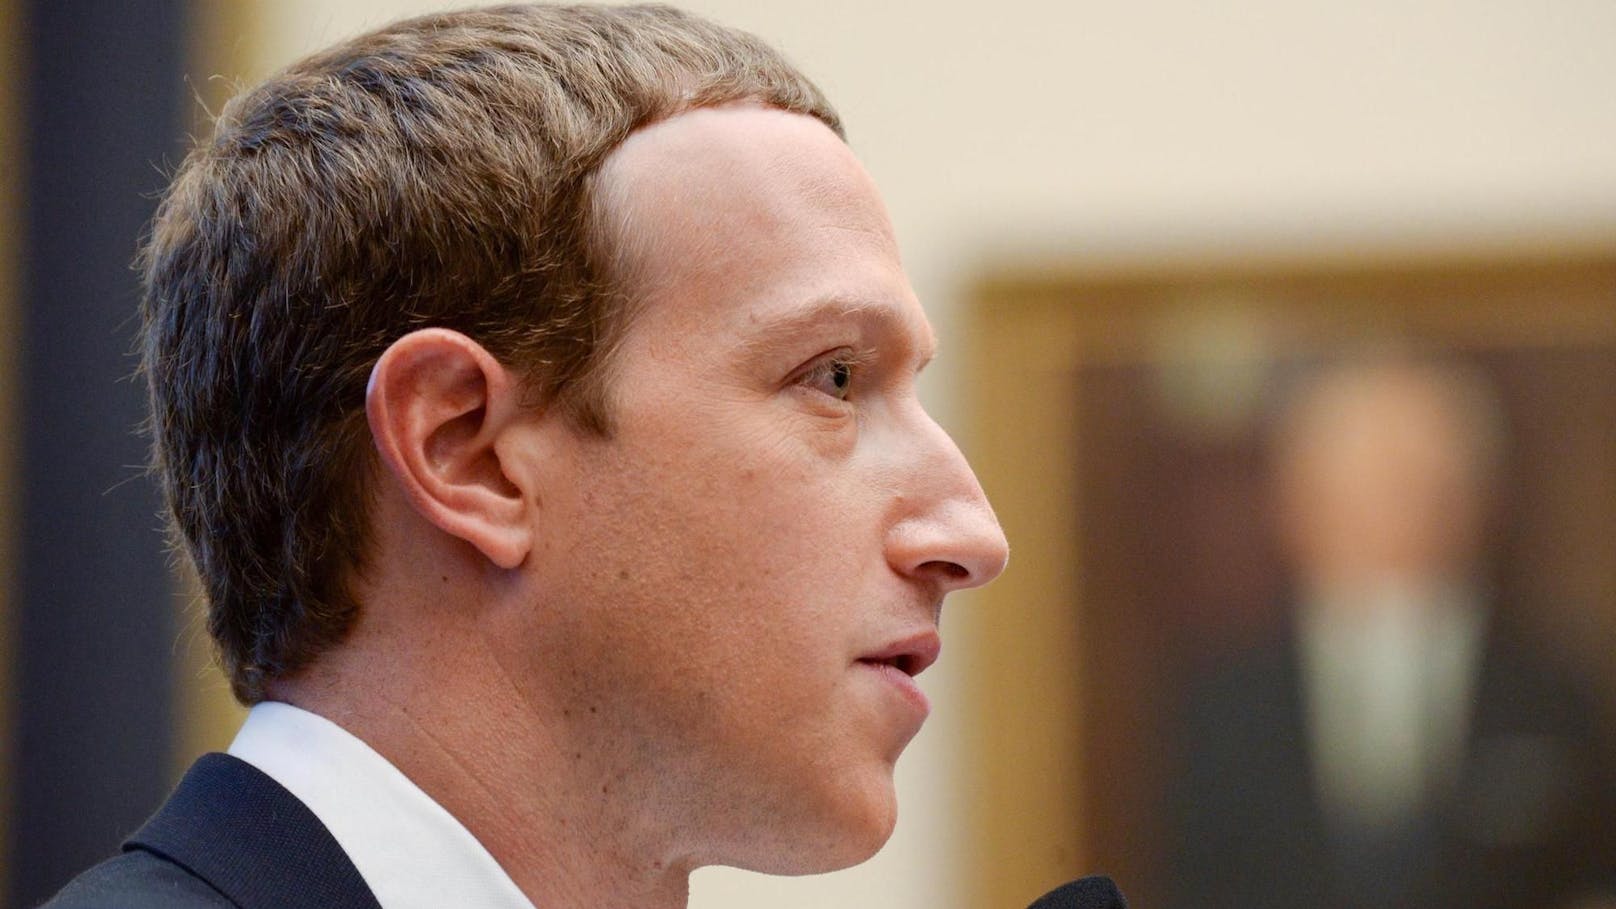 Fall Cambridge Analytica: Wenn er belangt wird, könnten dem Facebook-Chef <strong>Mark Zuckerberg</strong> hohe Geldstrafen drohen.